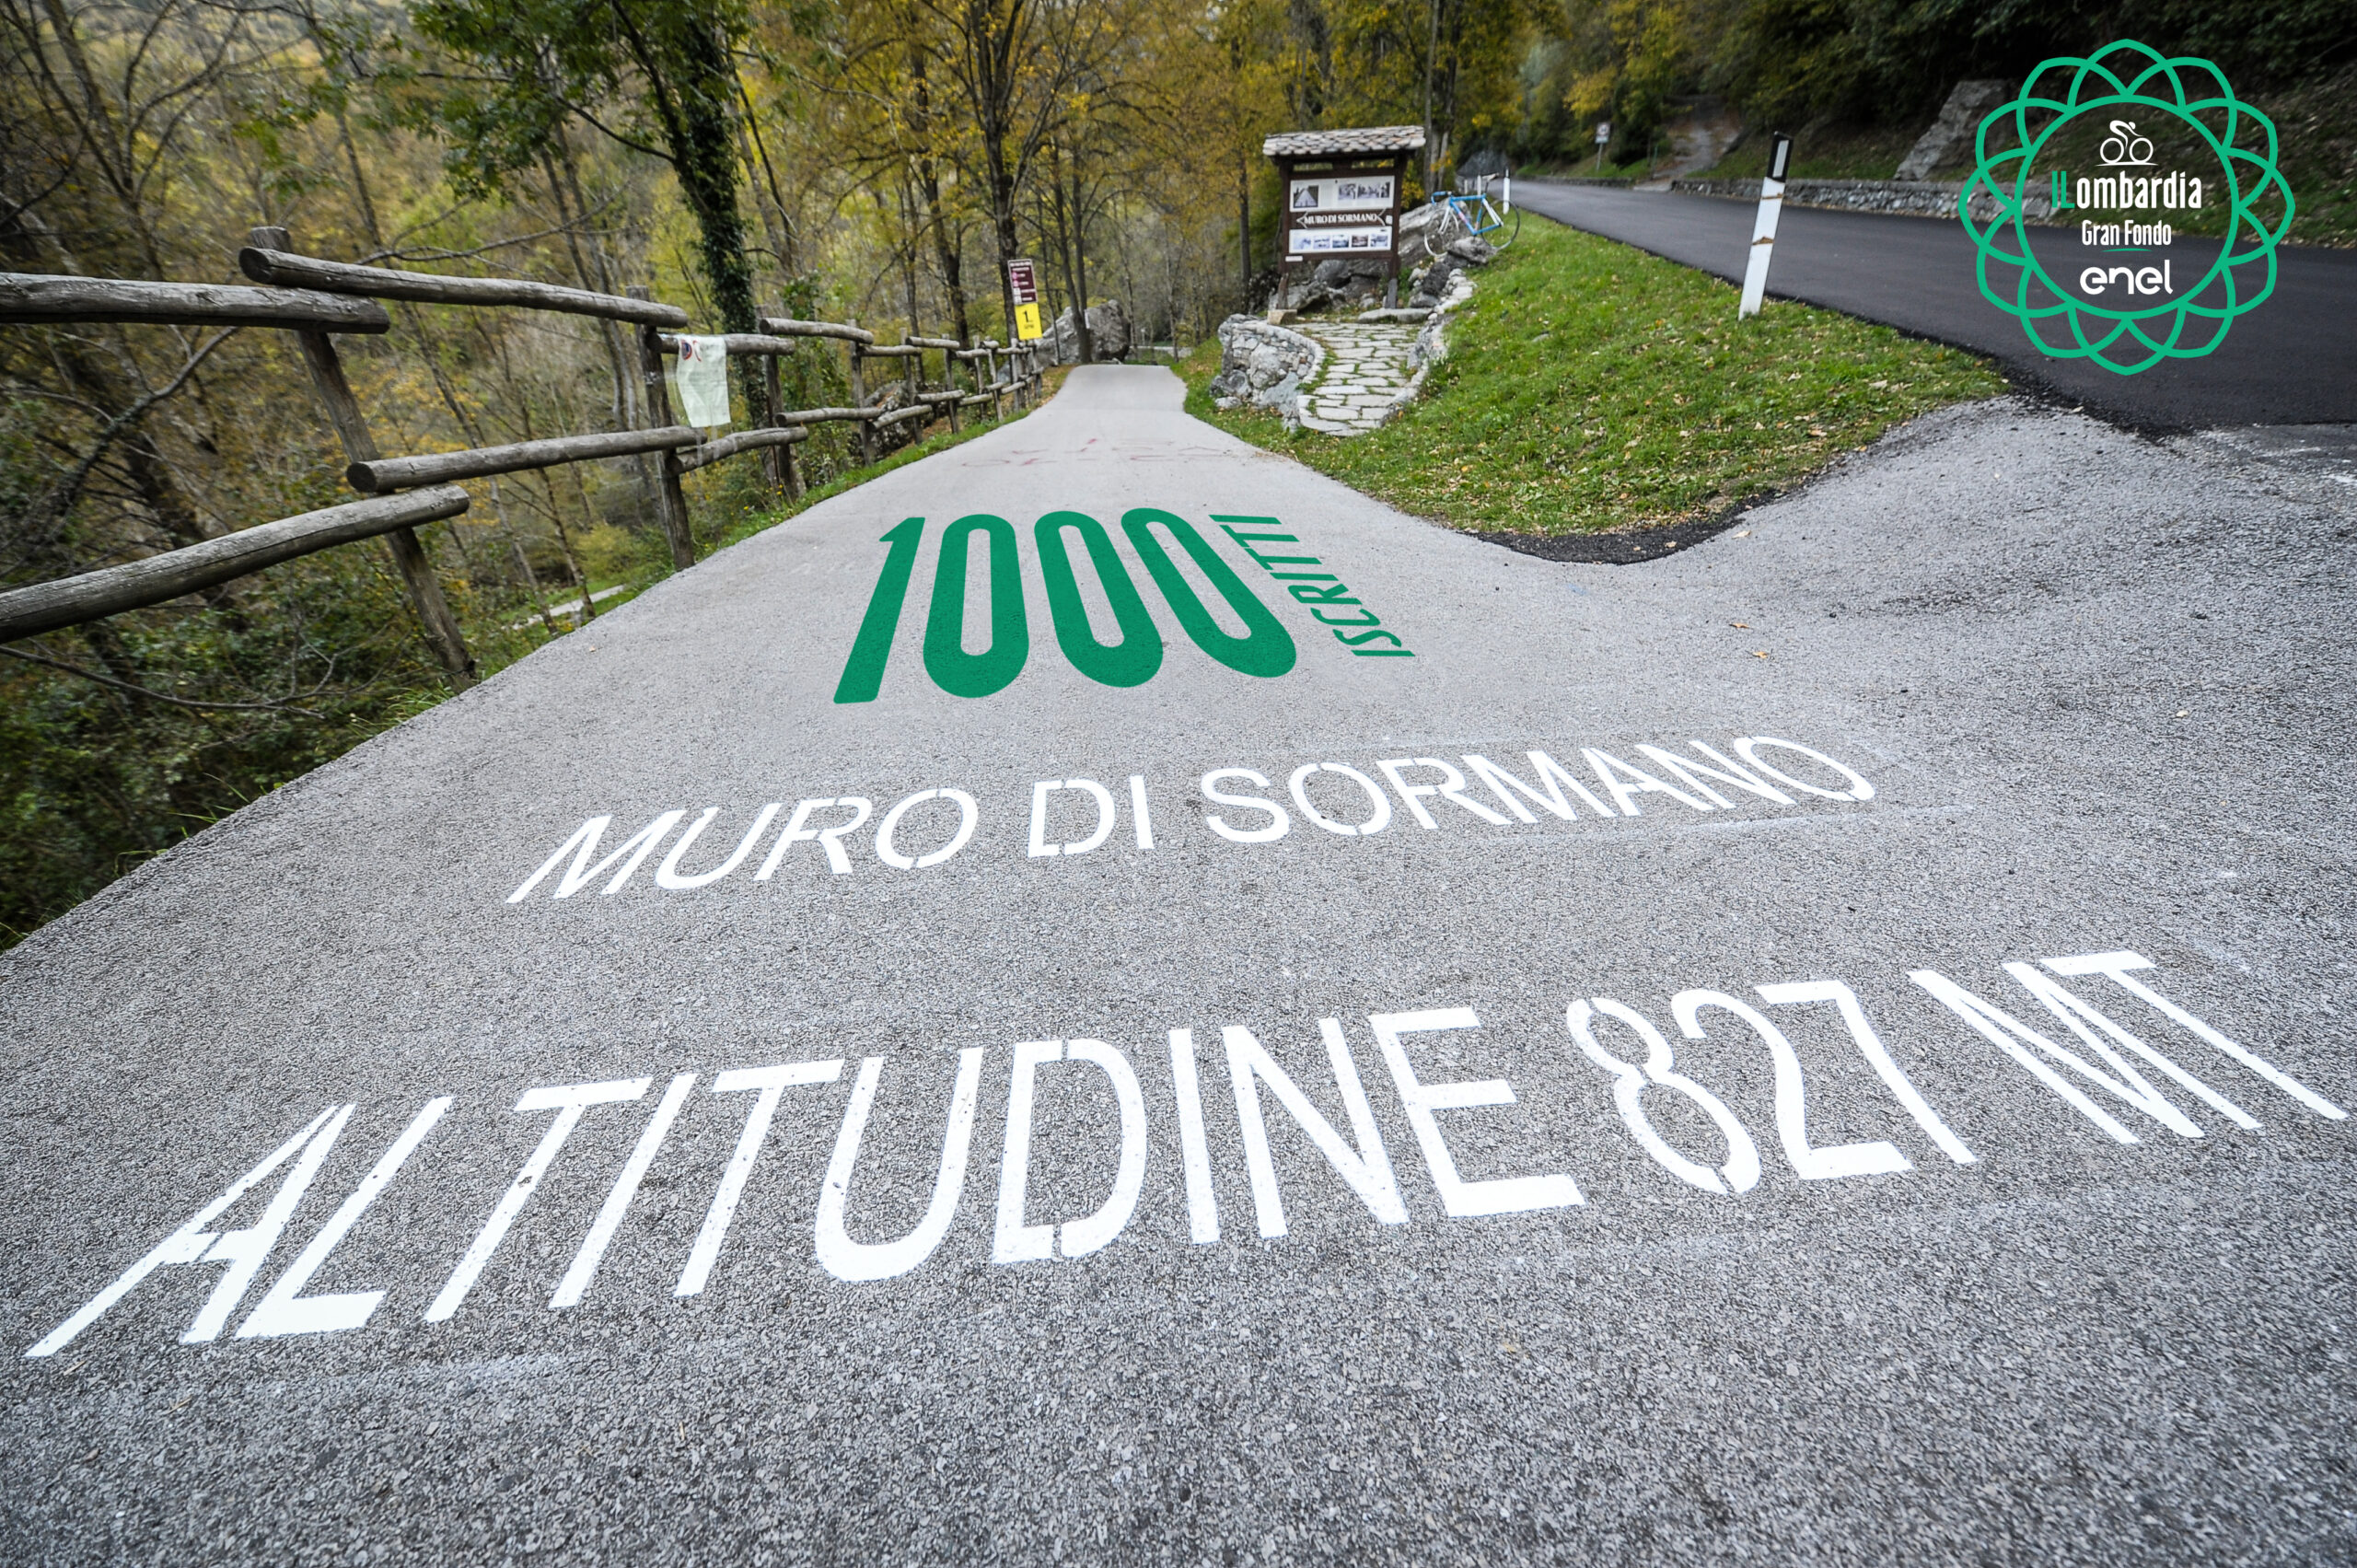 The Gran Fondo Il Lombardia has reached 1000 participants!